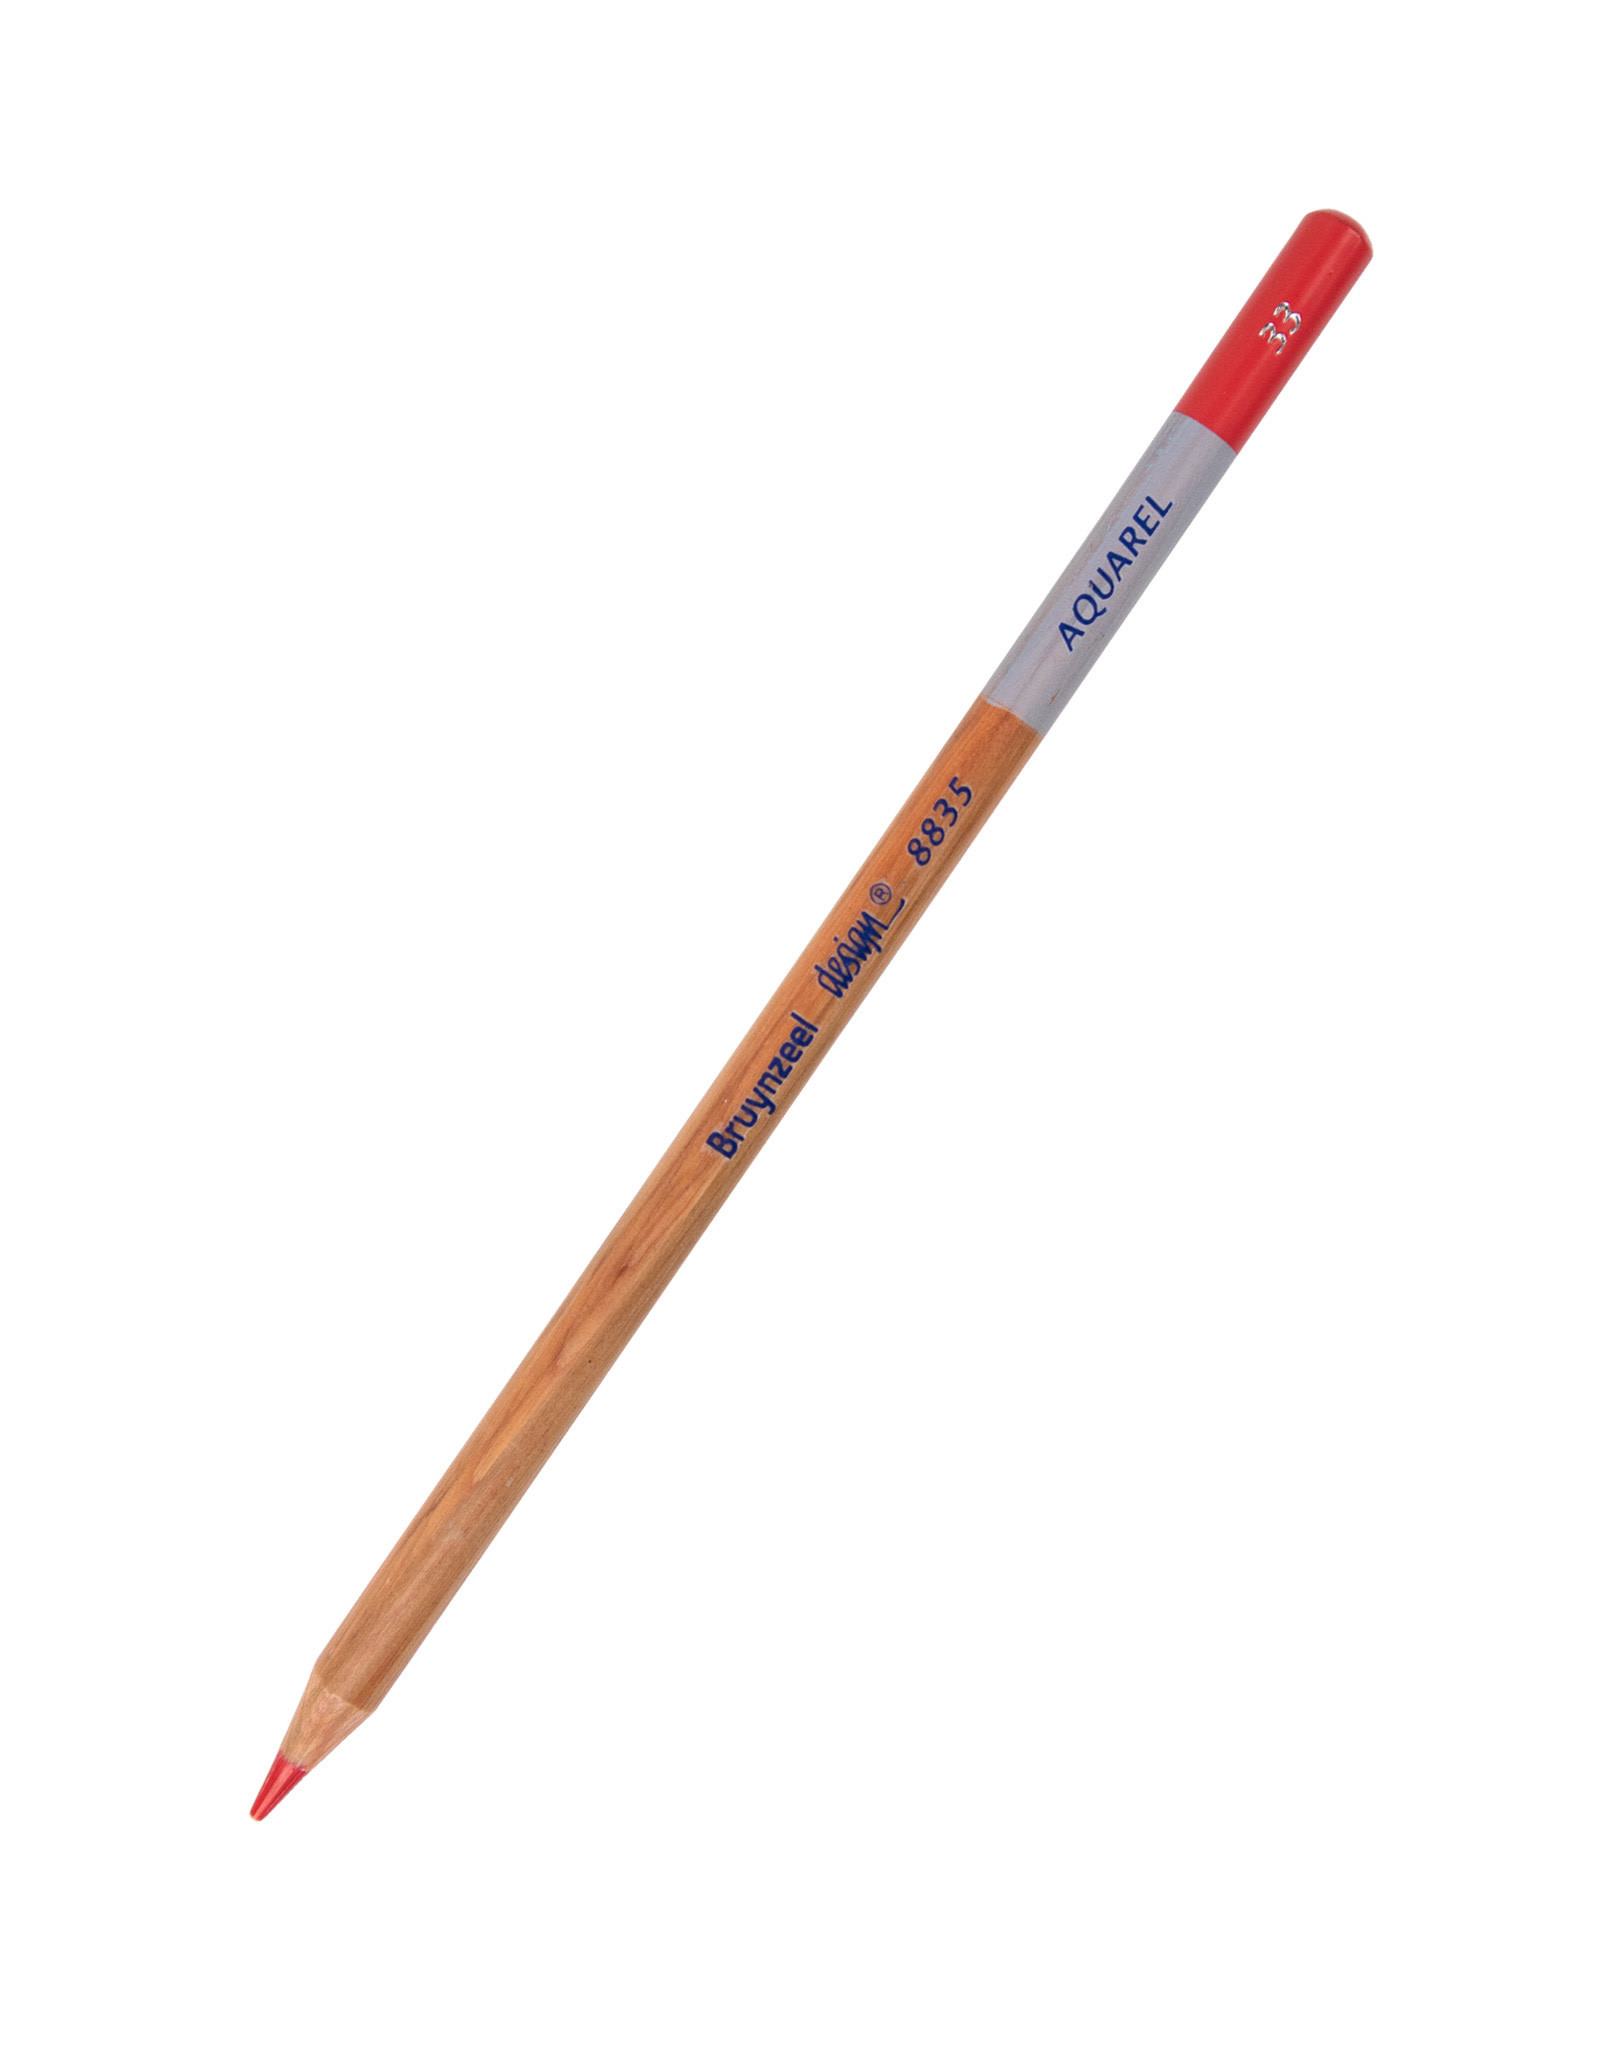 Royal Talens Bruynzeel Design Aquarel Pencil, Deep Red